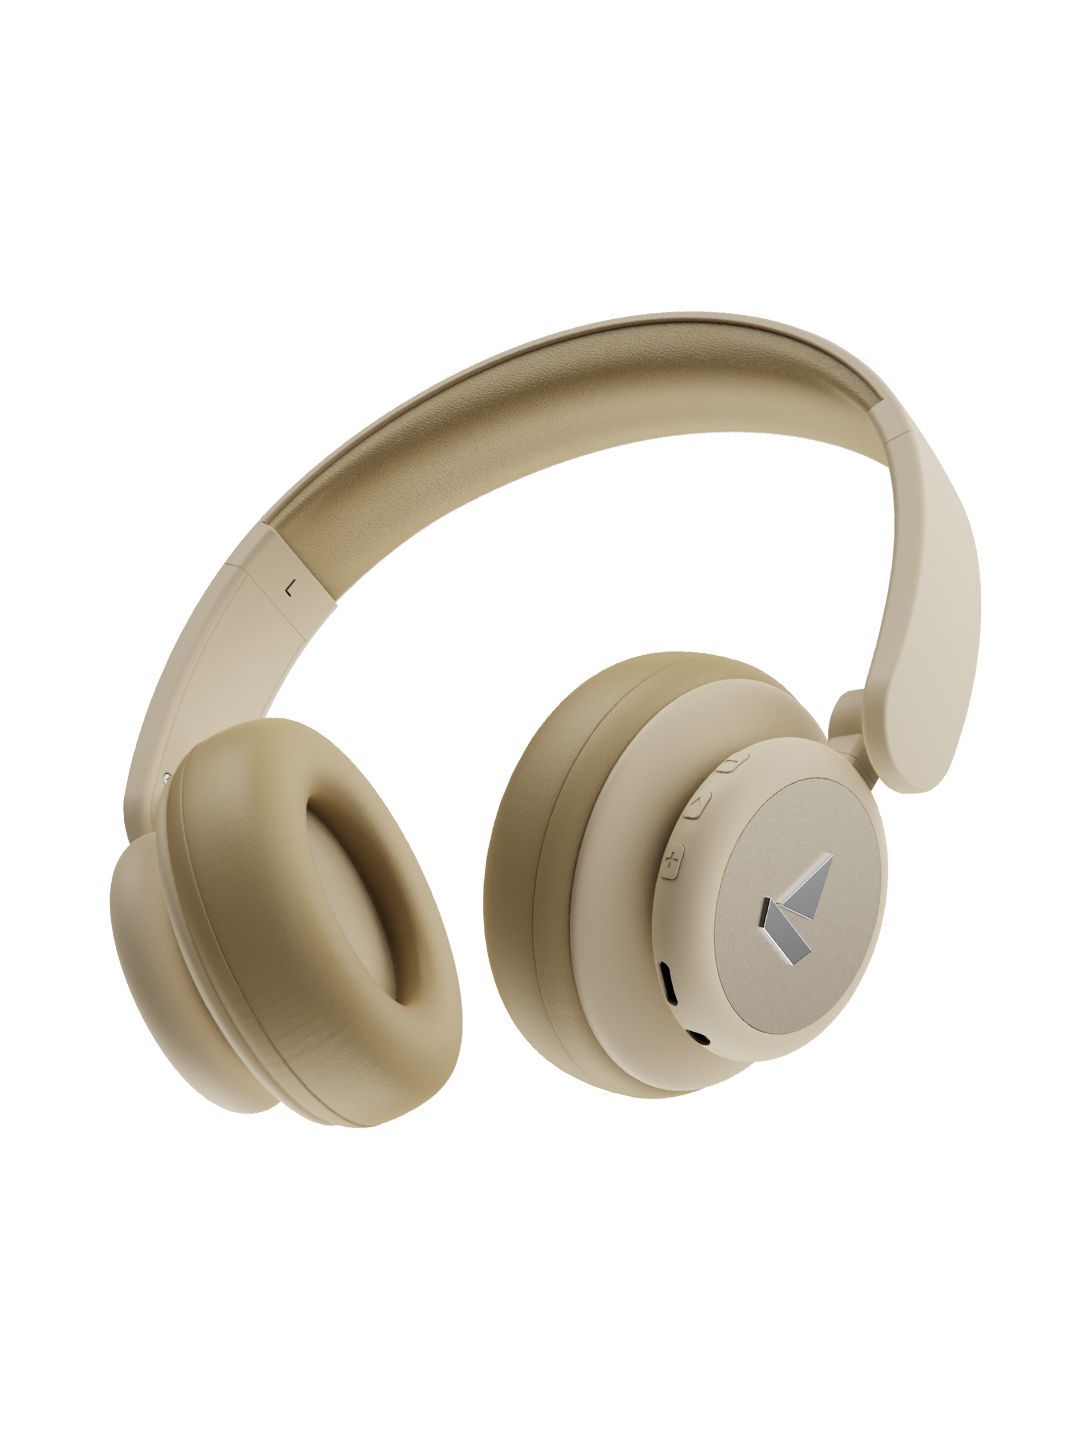 boAt Rockerz 450 Pro M Bluetooth On-Ear Headphone with Mic (Hazel Beige) Price in India